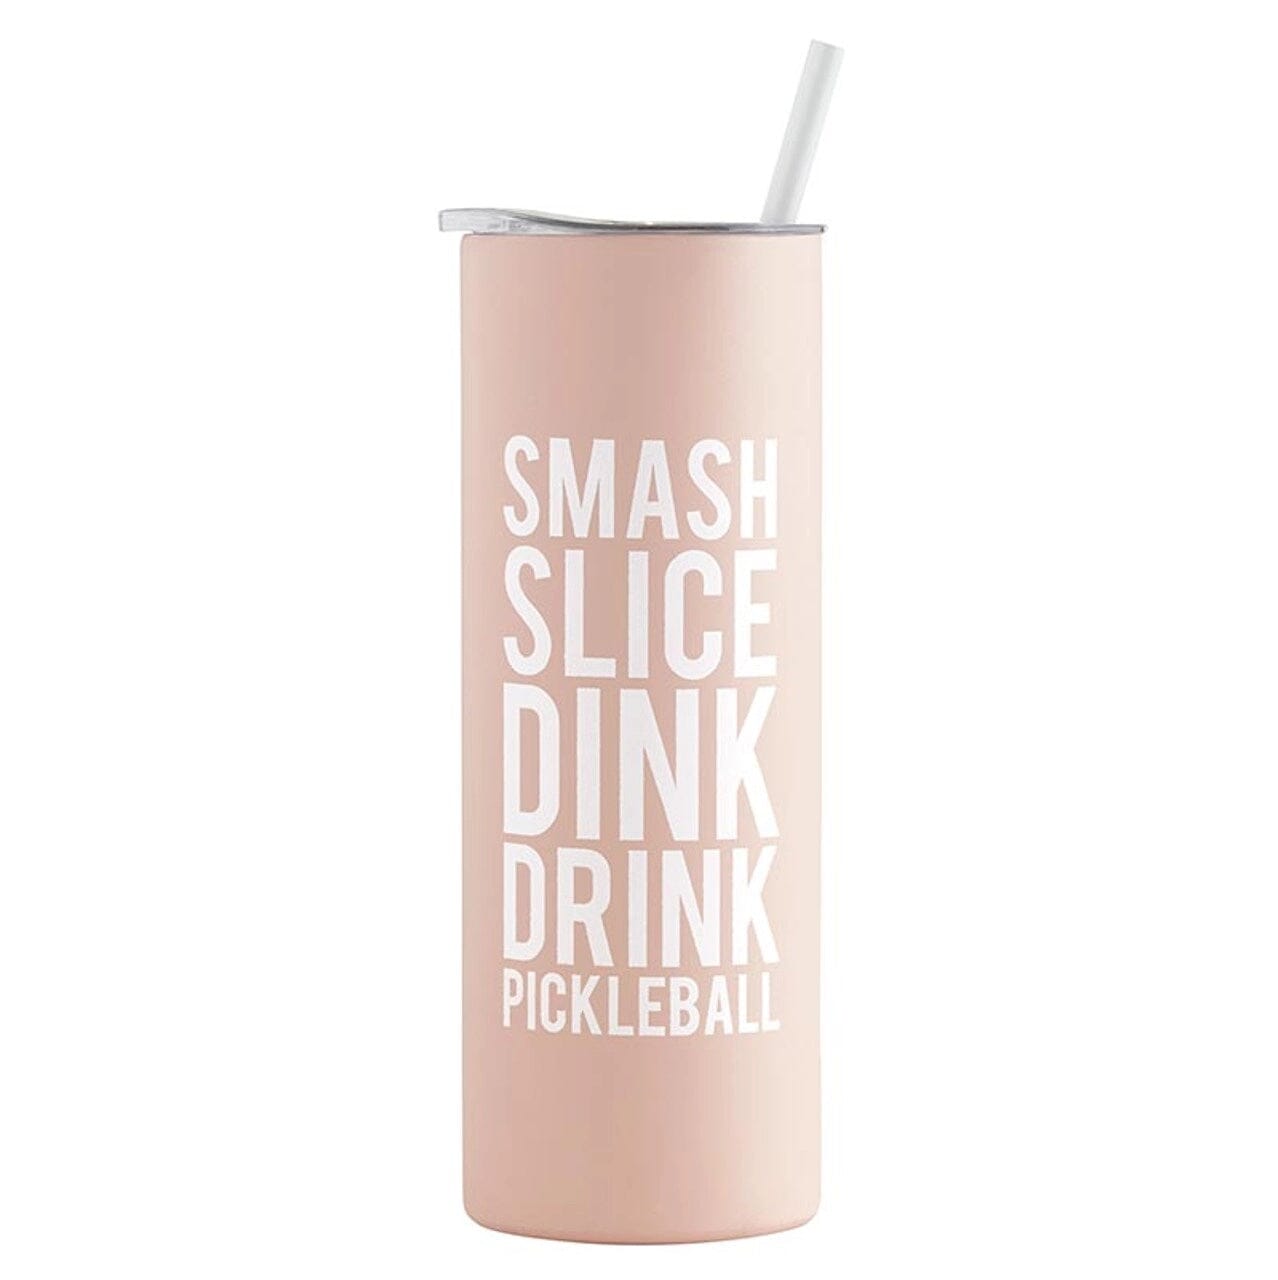 Skinny Tumbler - Smash Slice Pickleball Gift Set Santa Barbara Design Studio 